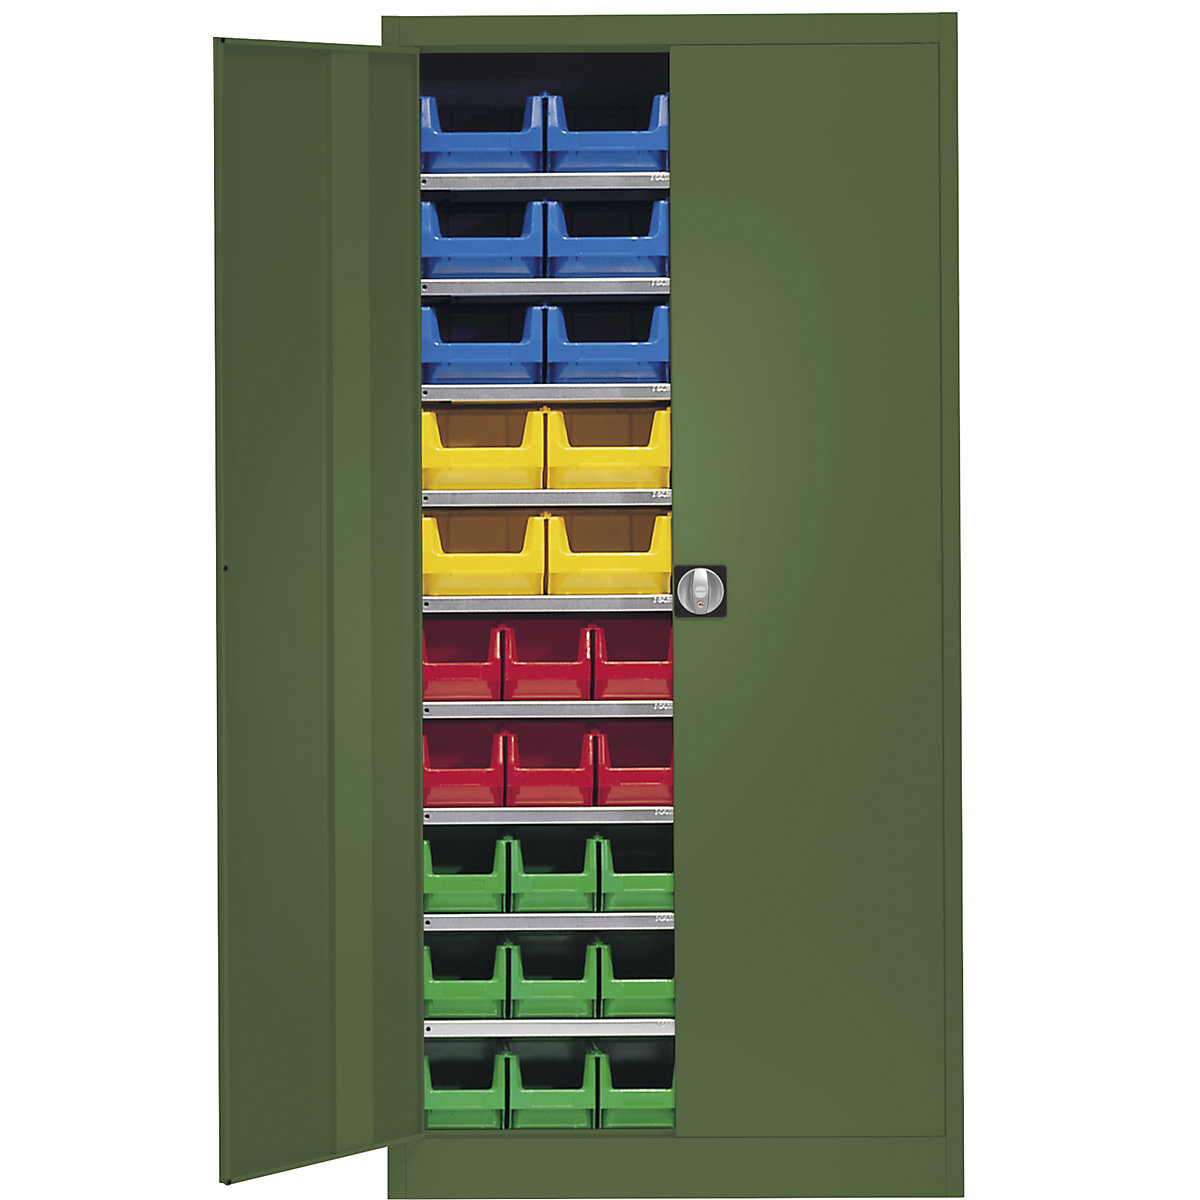 Skladová skriňa, jednofarebná – mauser, s 50 prepravkami s viditeľným obsahom, 9 políc, zelené, od 3 ks-3